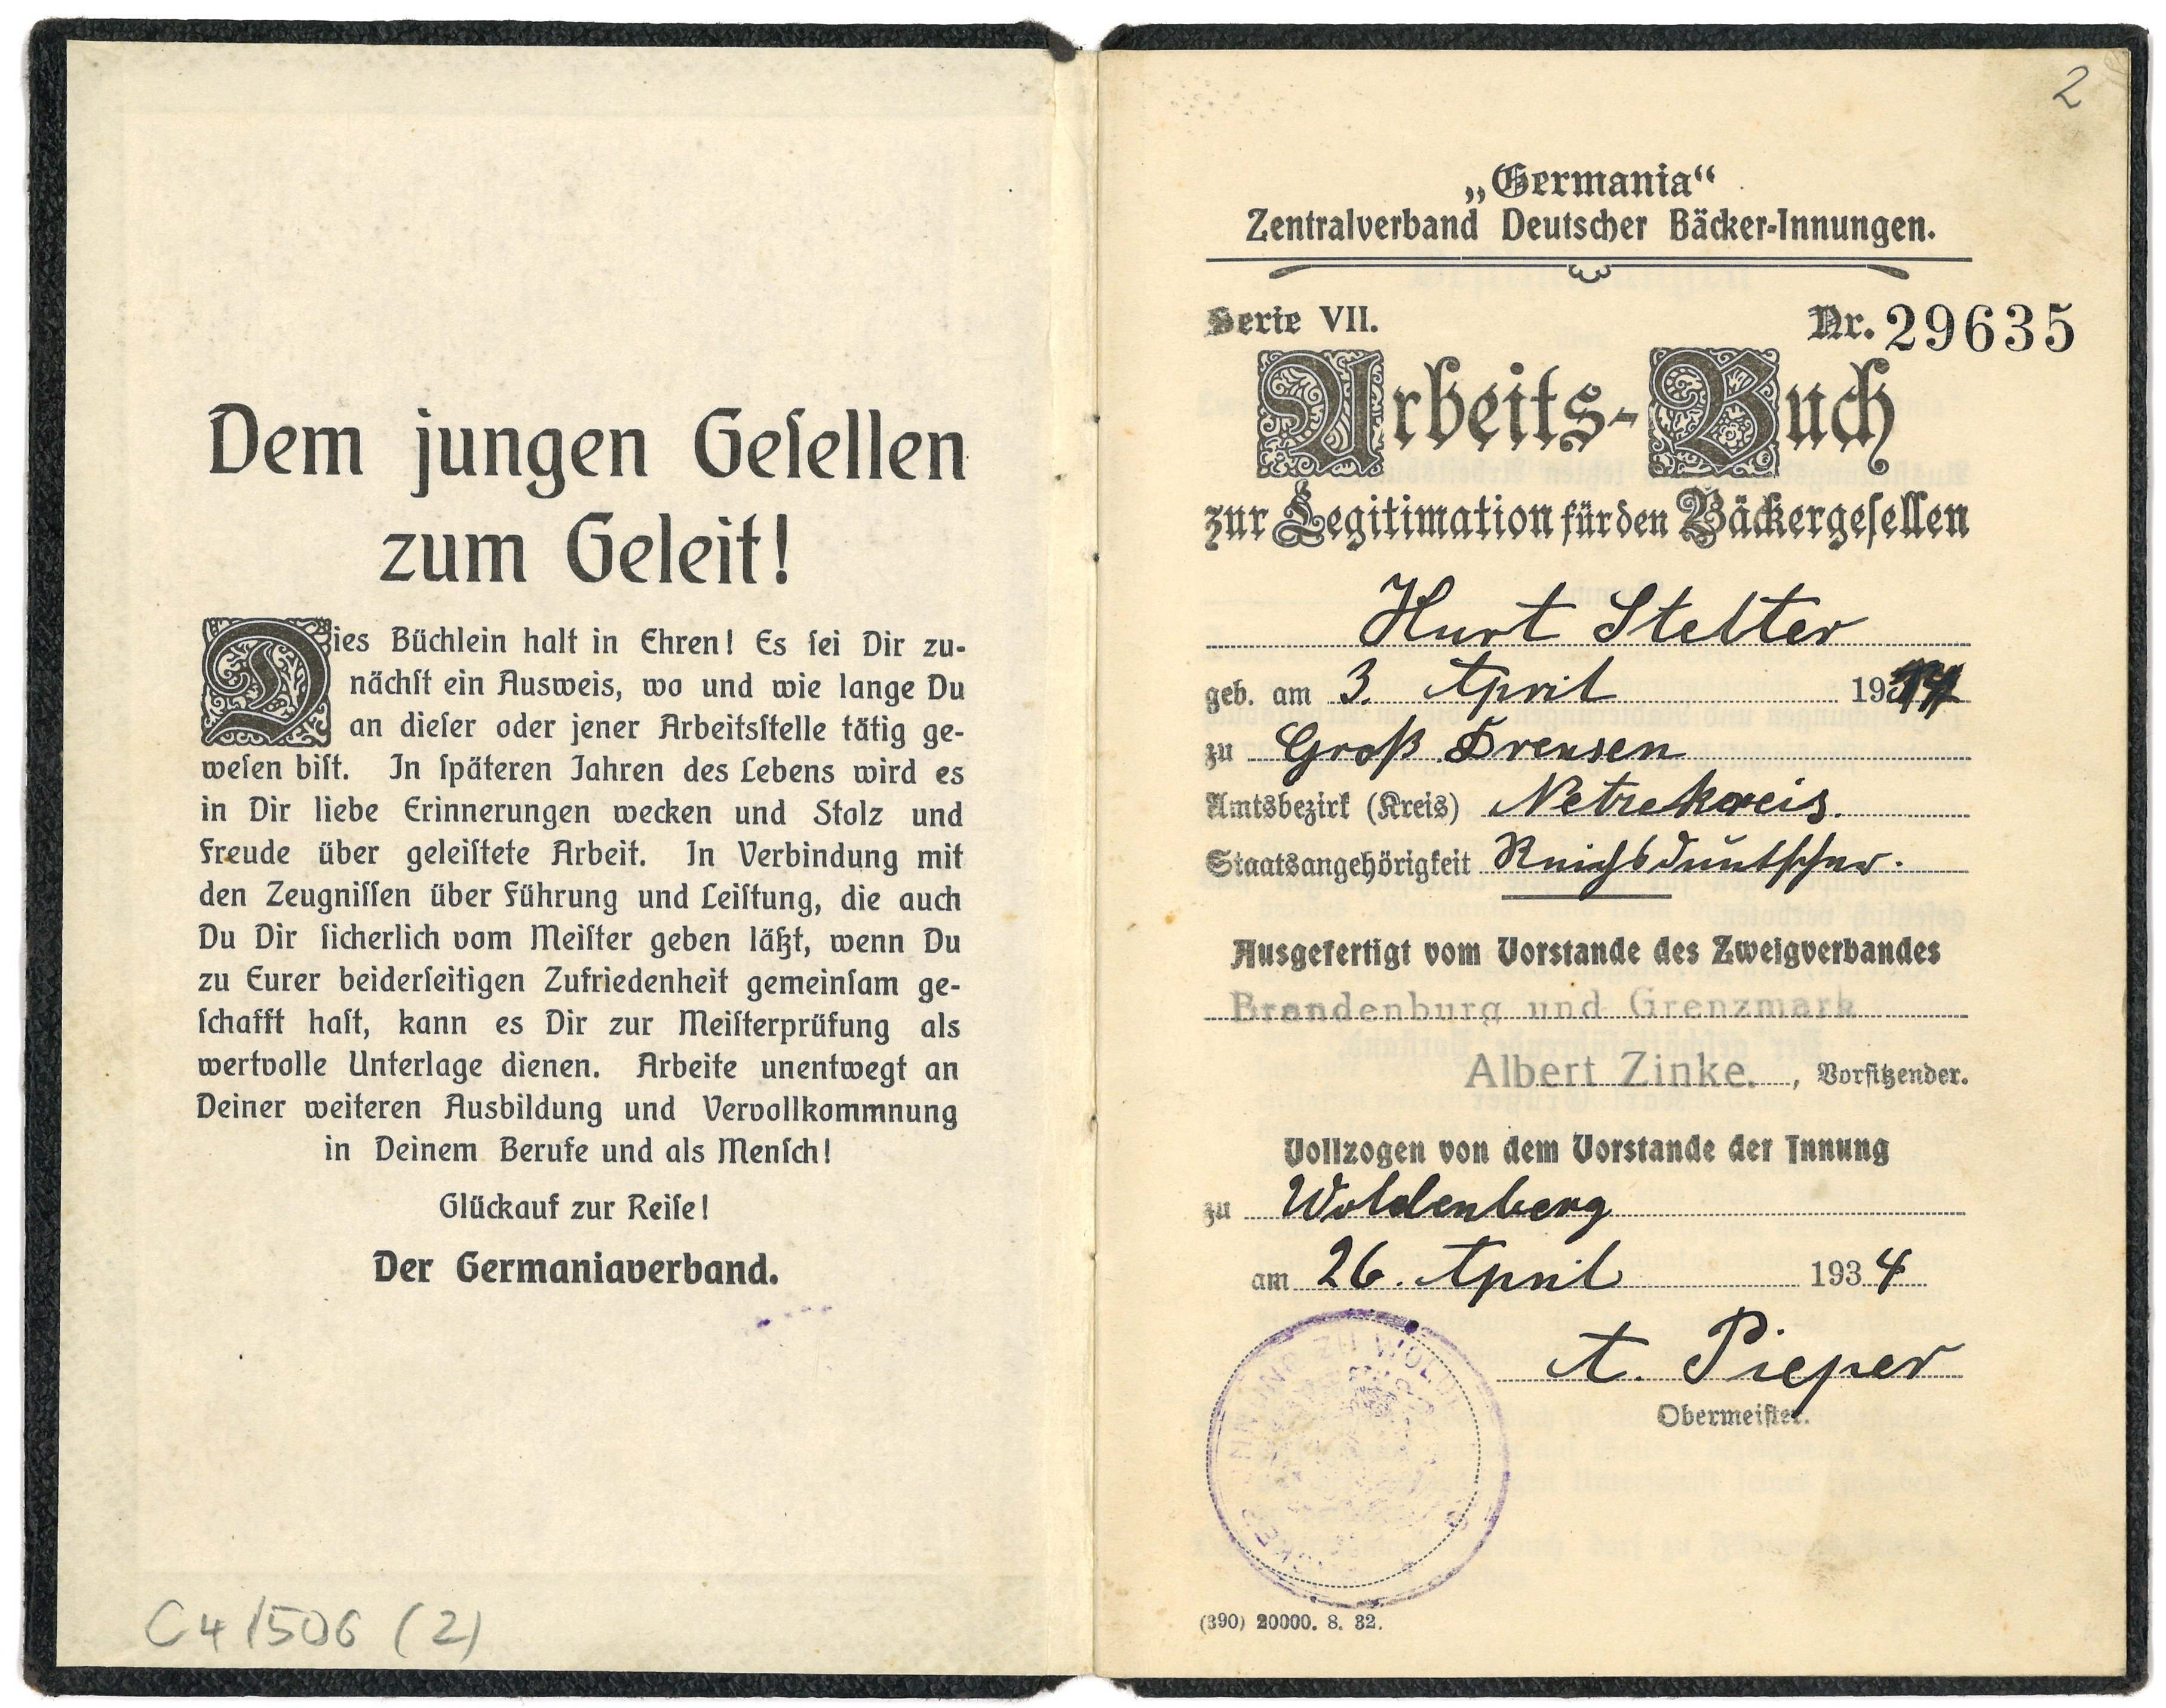 Arbeitsbuch für den Bäckergesellen Kurt Stelter in Woldenberg/Nm. 1934 (Landesgeschichtliche Vereinigung für die Mark Brandenburg e.V., Archiv CC BY)